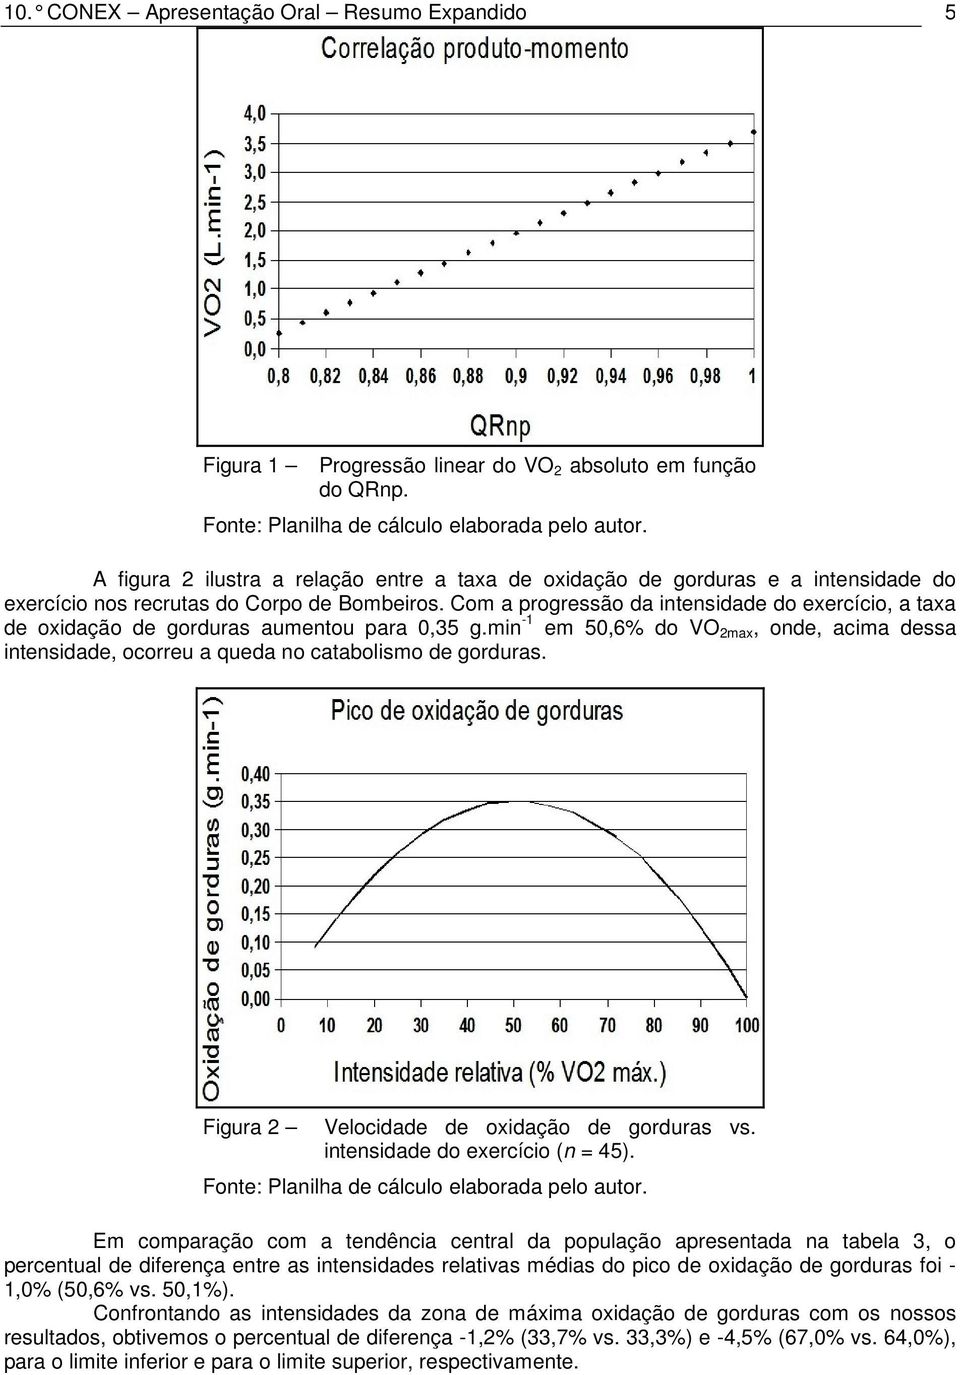 Com a progressão da intensidade do exercício, a taxa de oxidação de gorduras aumentou para 0,35 g.min -1 em 50,6% do VO 2max, onde, acima dessa intensidade, ocorreu a queda no catabolismo de gorduras.